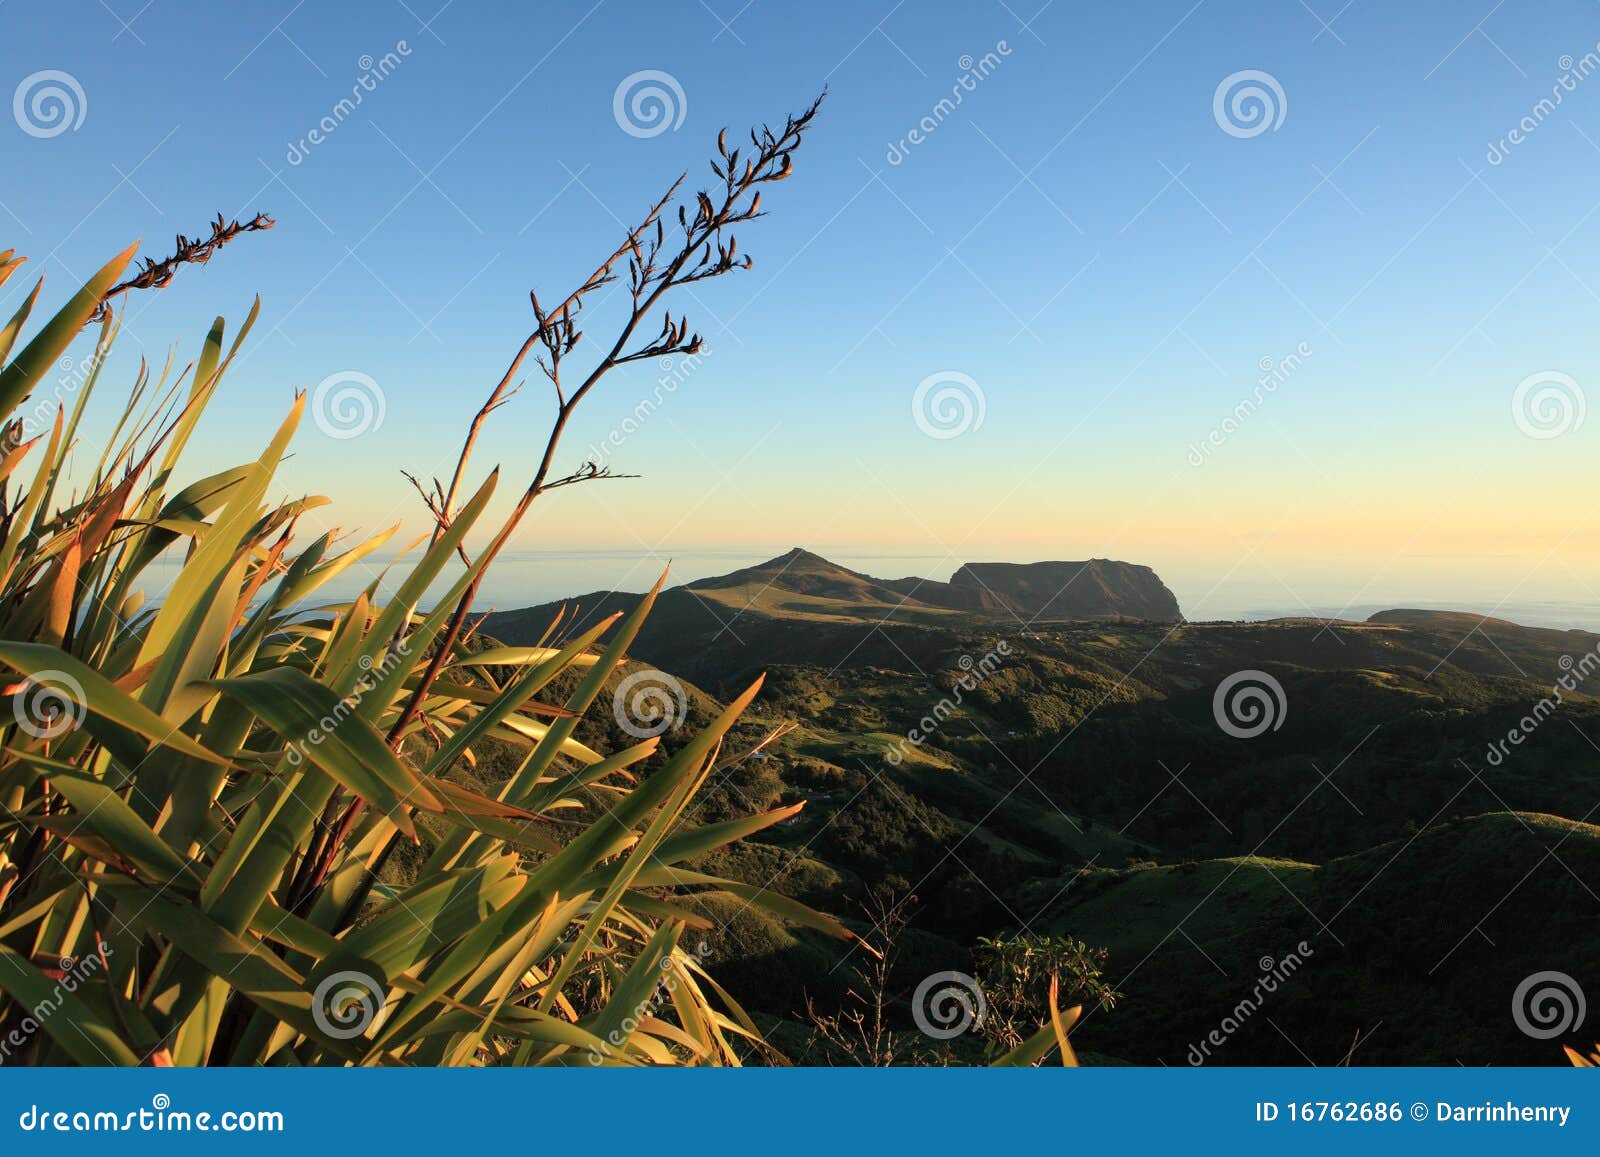 flax plants in dawn light st helena island